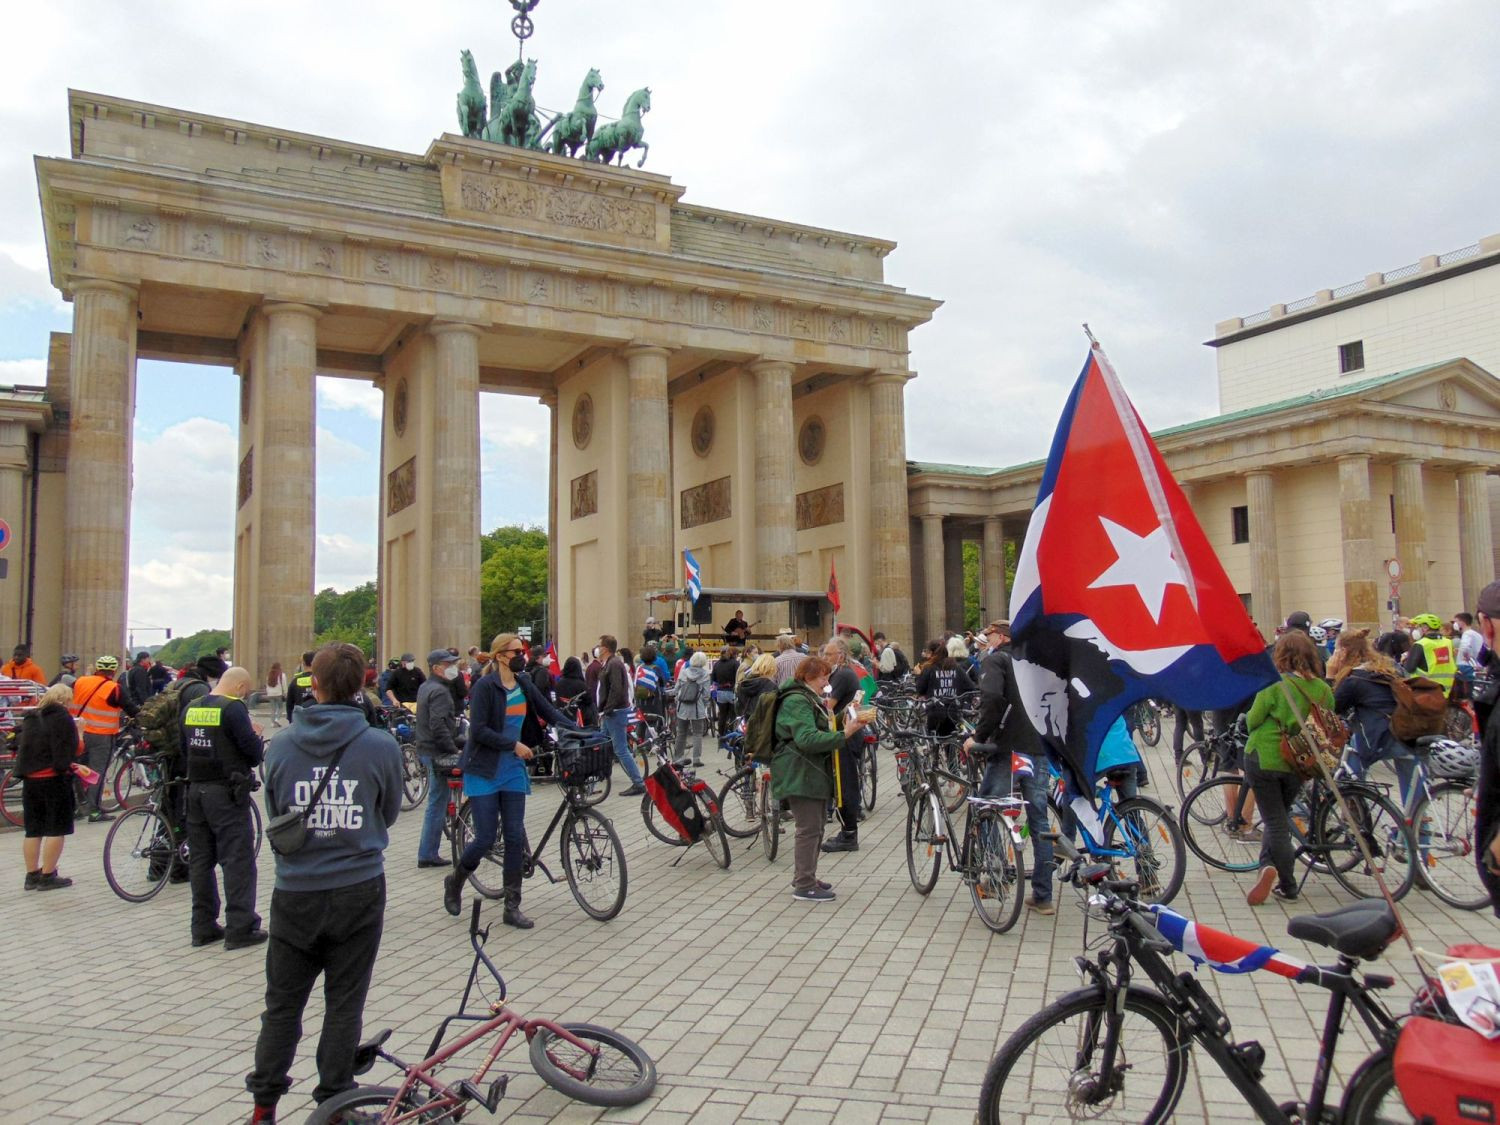 Fahrraddemo gegen die Blockade am Brandenburger Tor